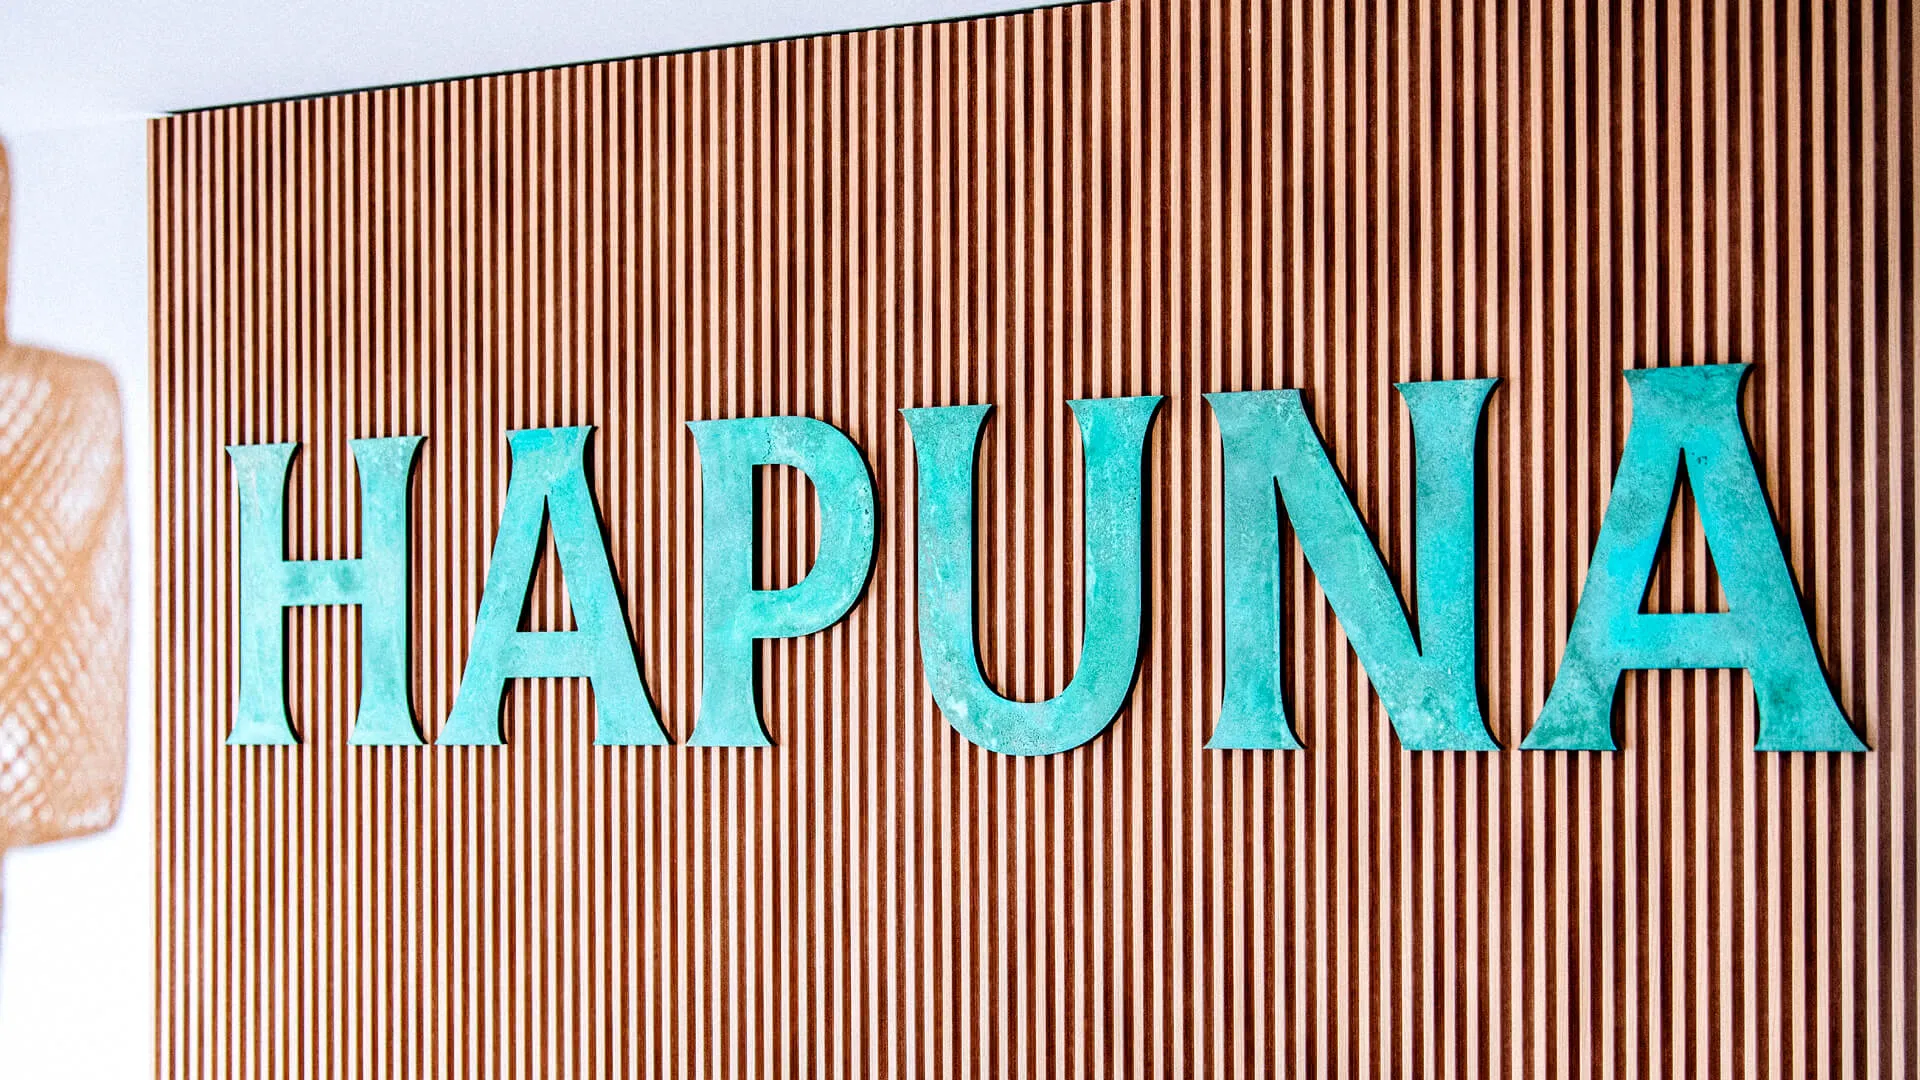 Hapuna - Wort aus Metall im industriellen Stil mit Patina überzogen